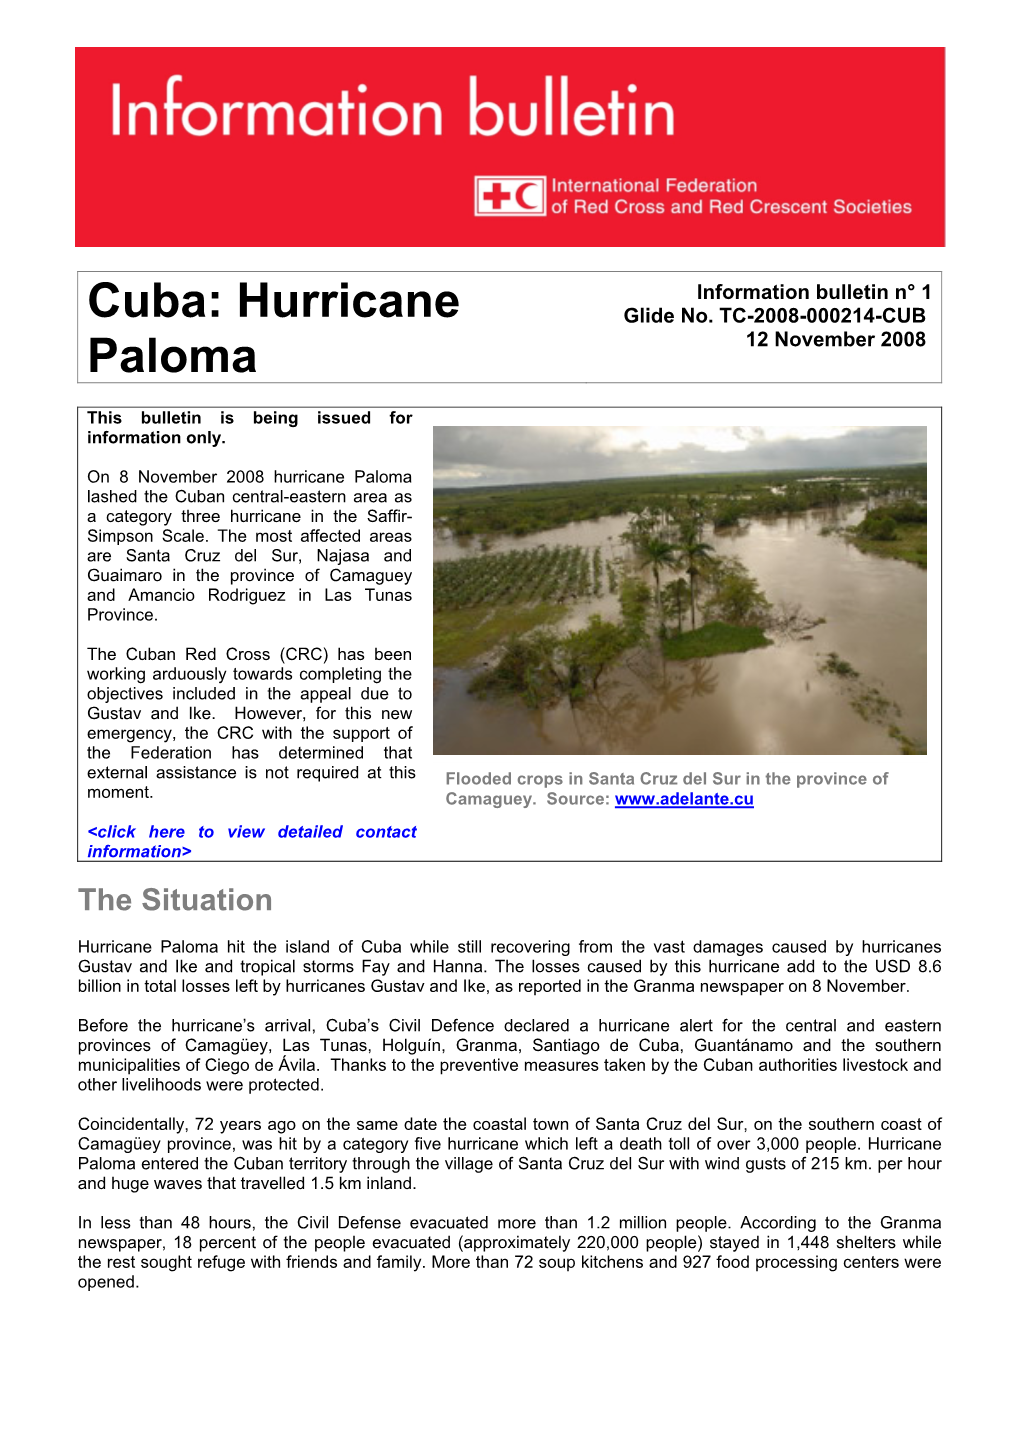 Cuba: Hurricane Paloma